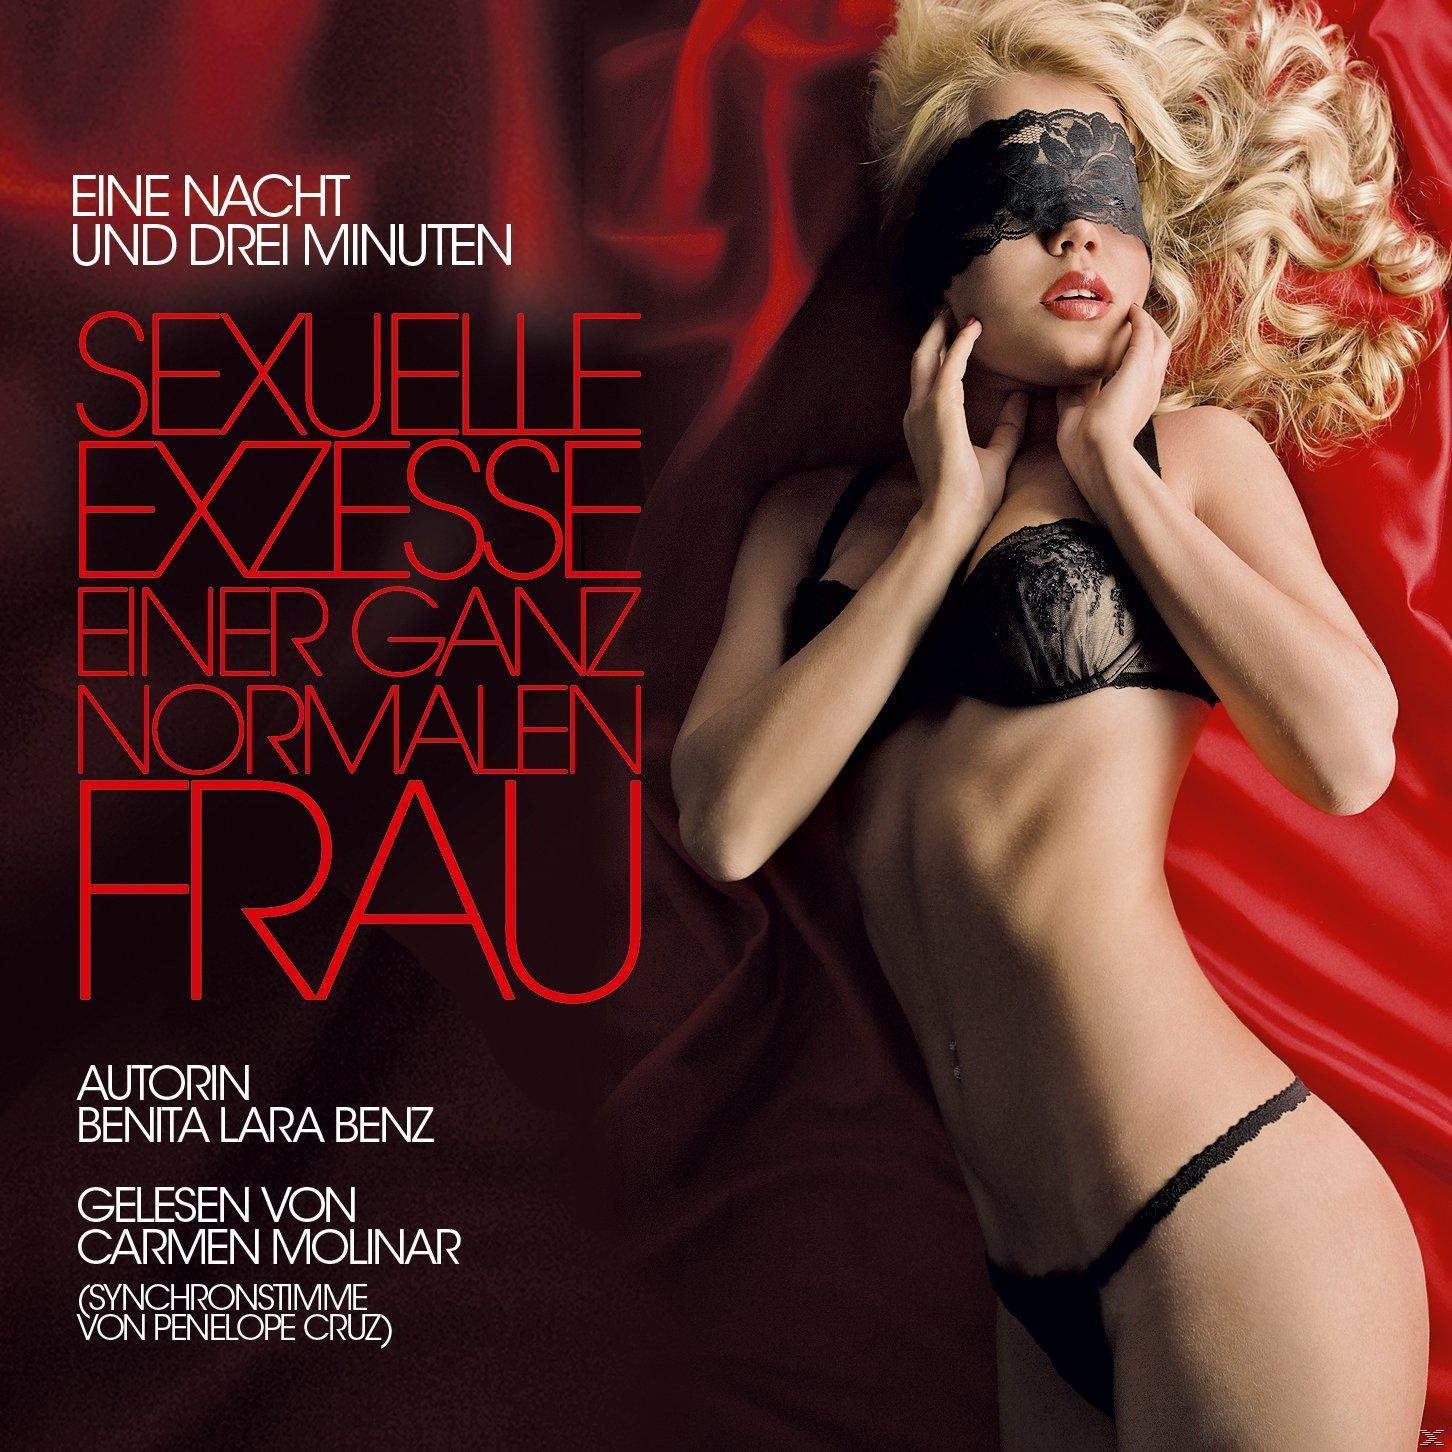 einer - normalen ganz Sexuelle (CD) Frau Exzesse